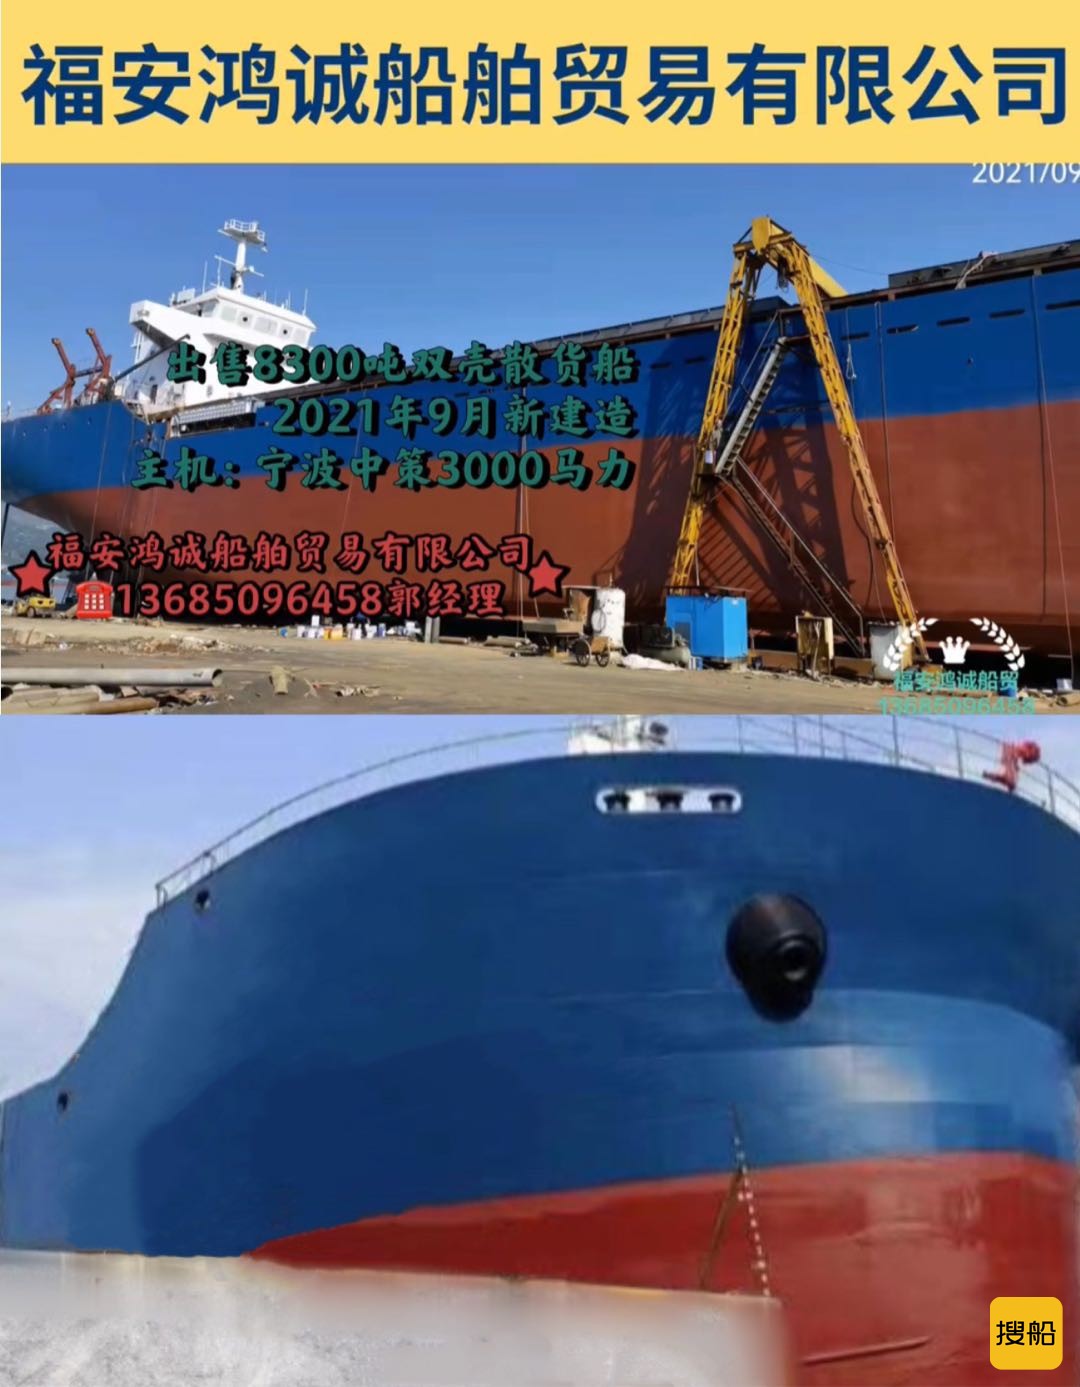 出卖8300吨新制作集货船 祸建 宁德市-2.jpg